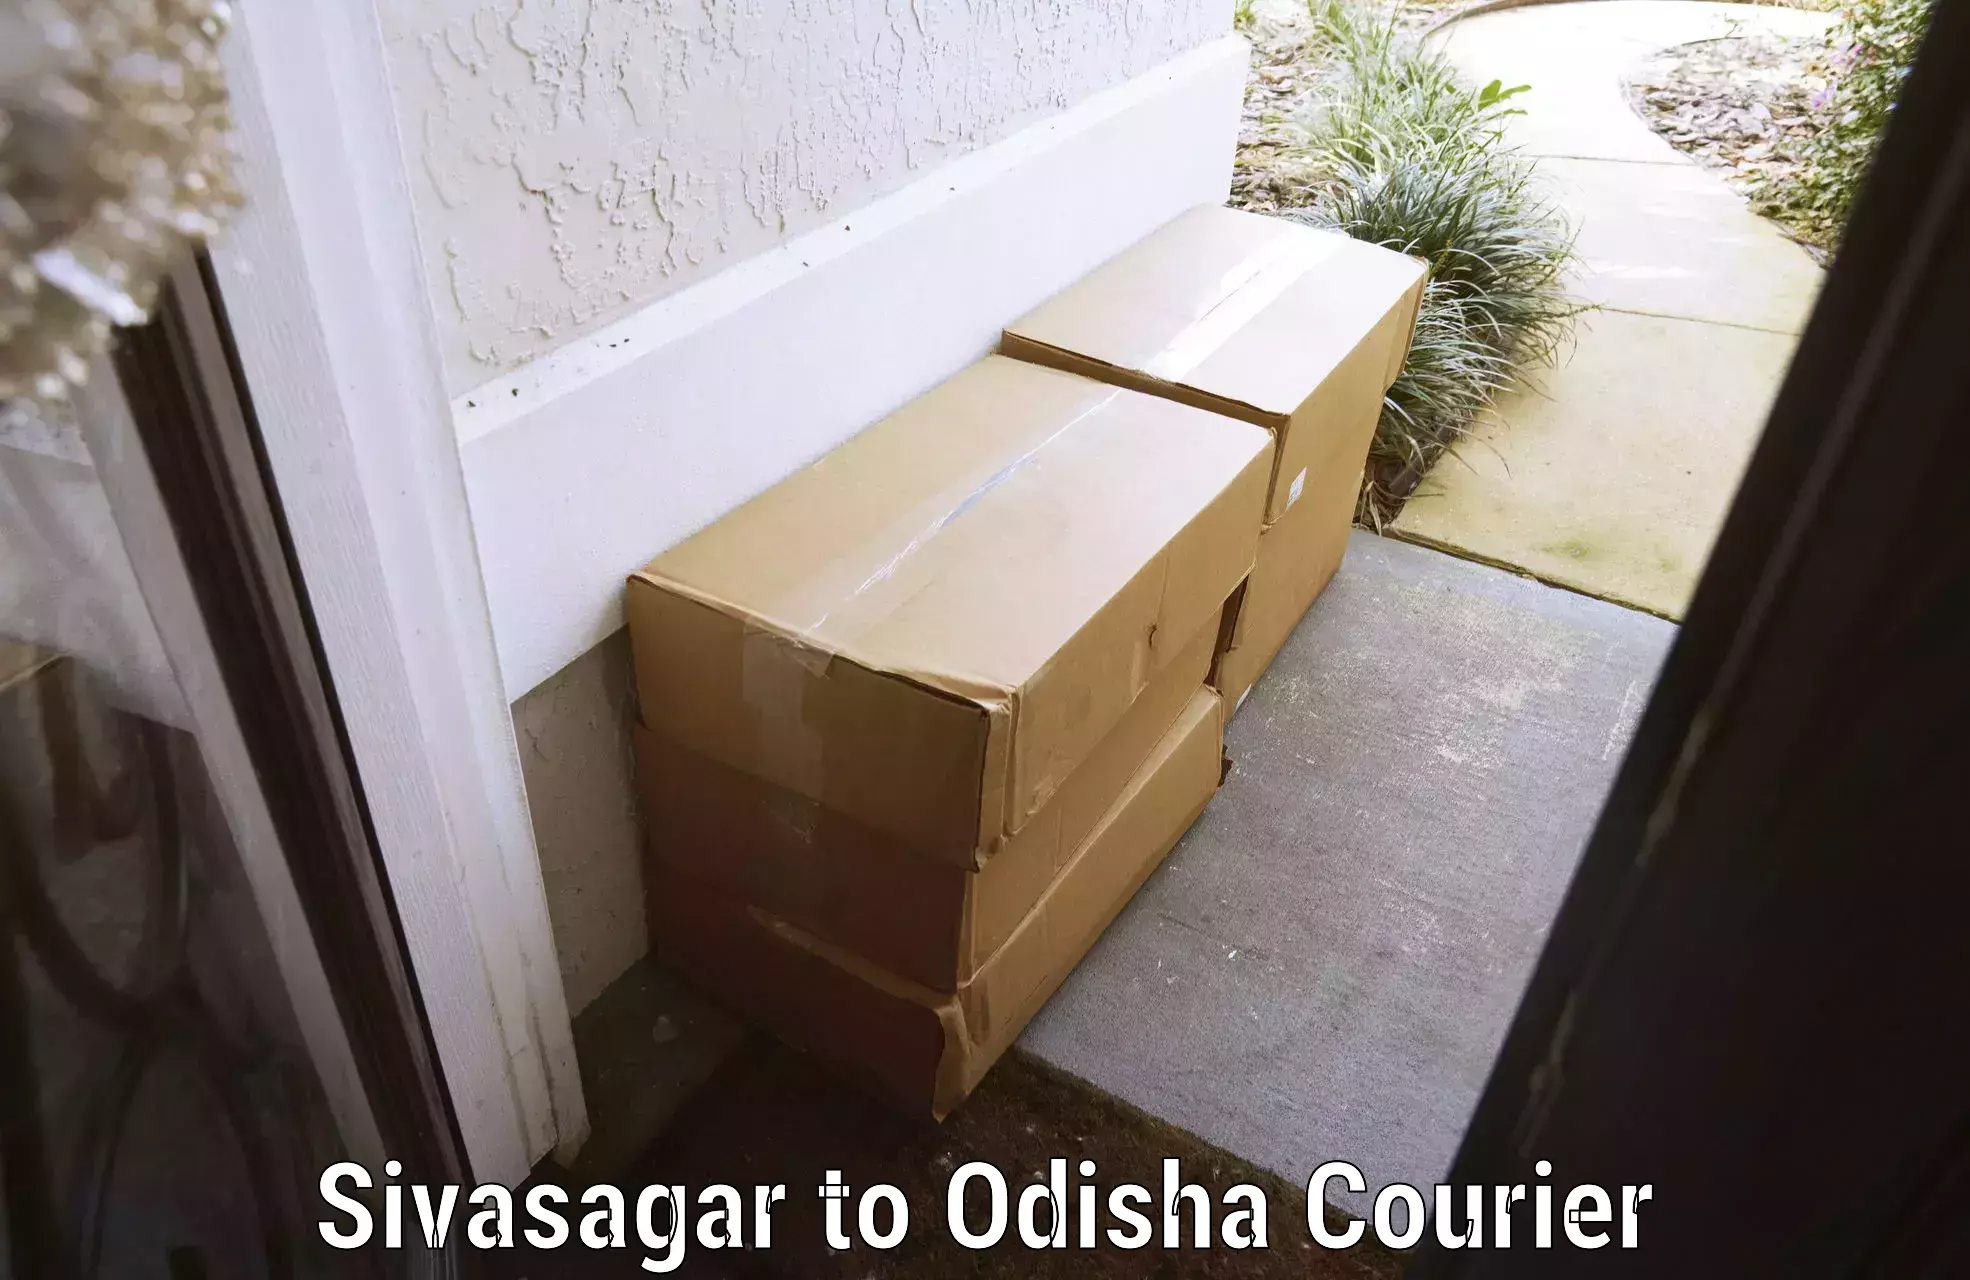 Luggage delivery network Sivasagar to Joda